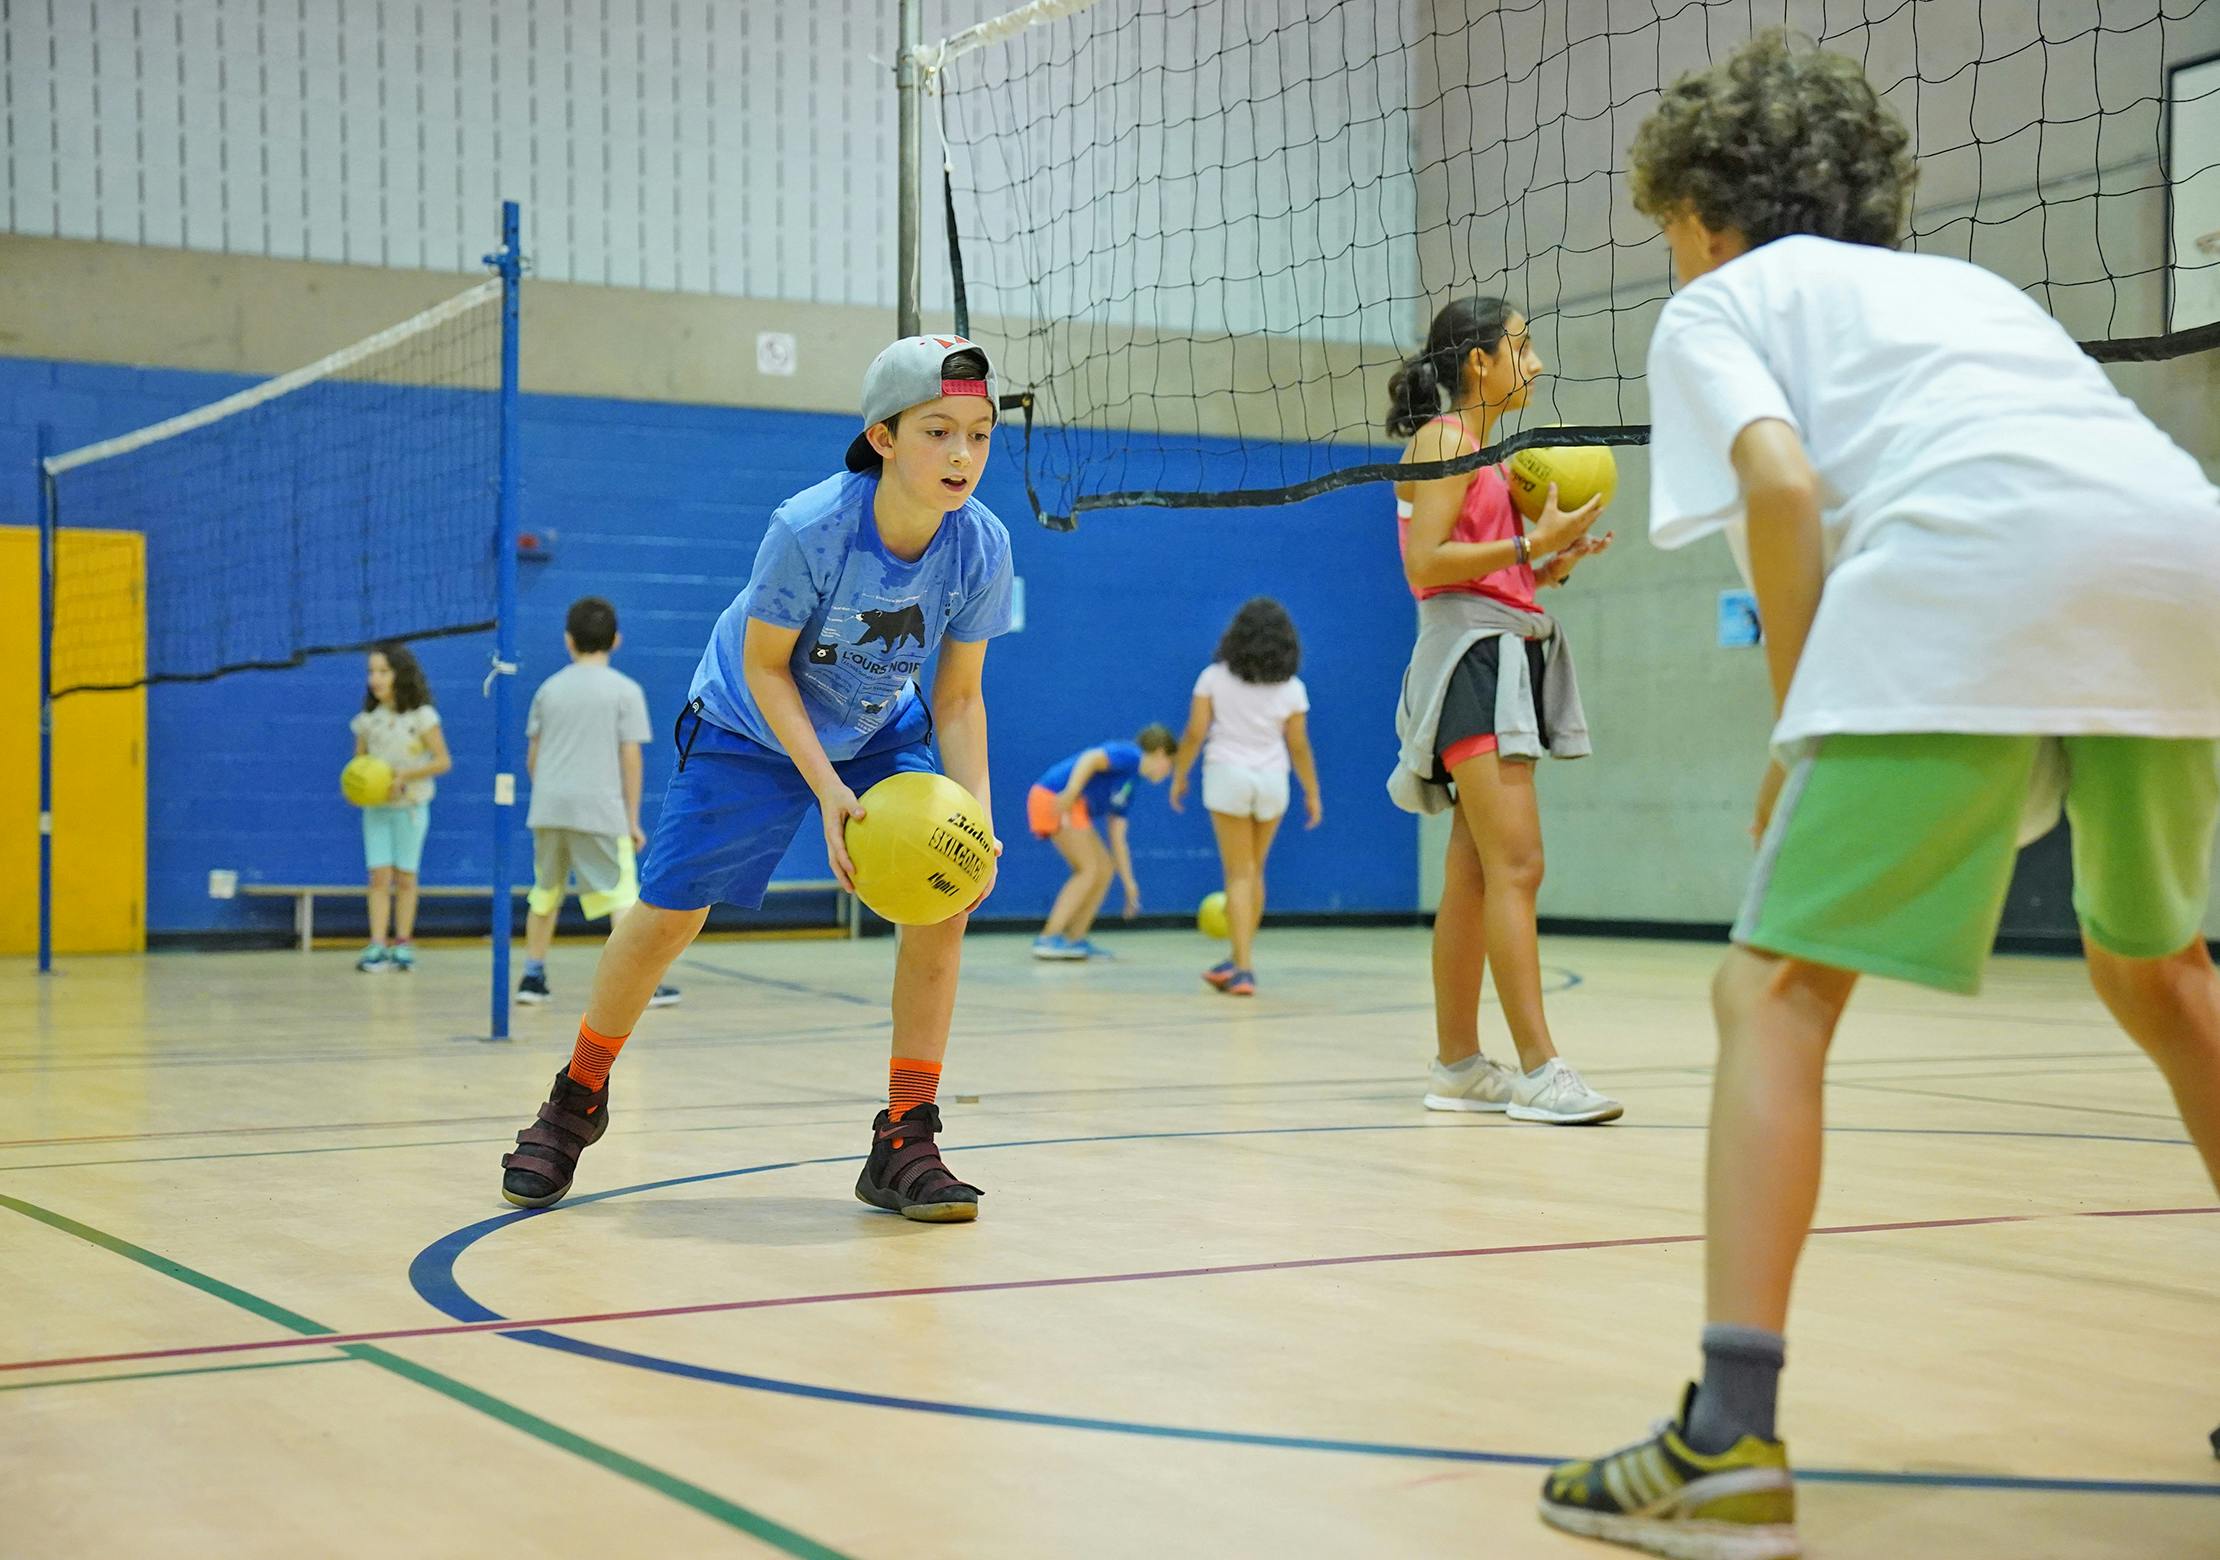 Camp volleyball 9 à 11 ans - Camps de jour CEPSUM